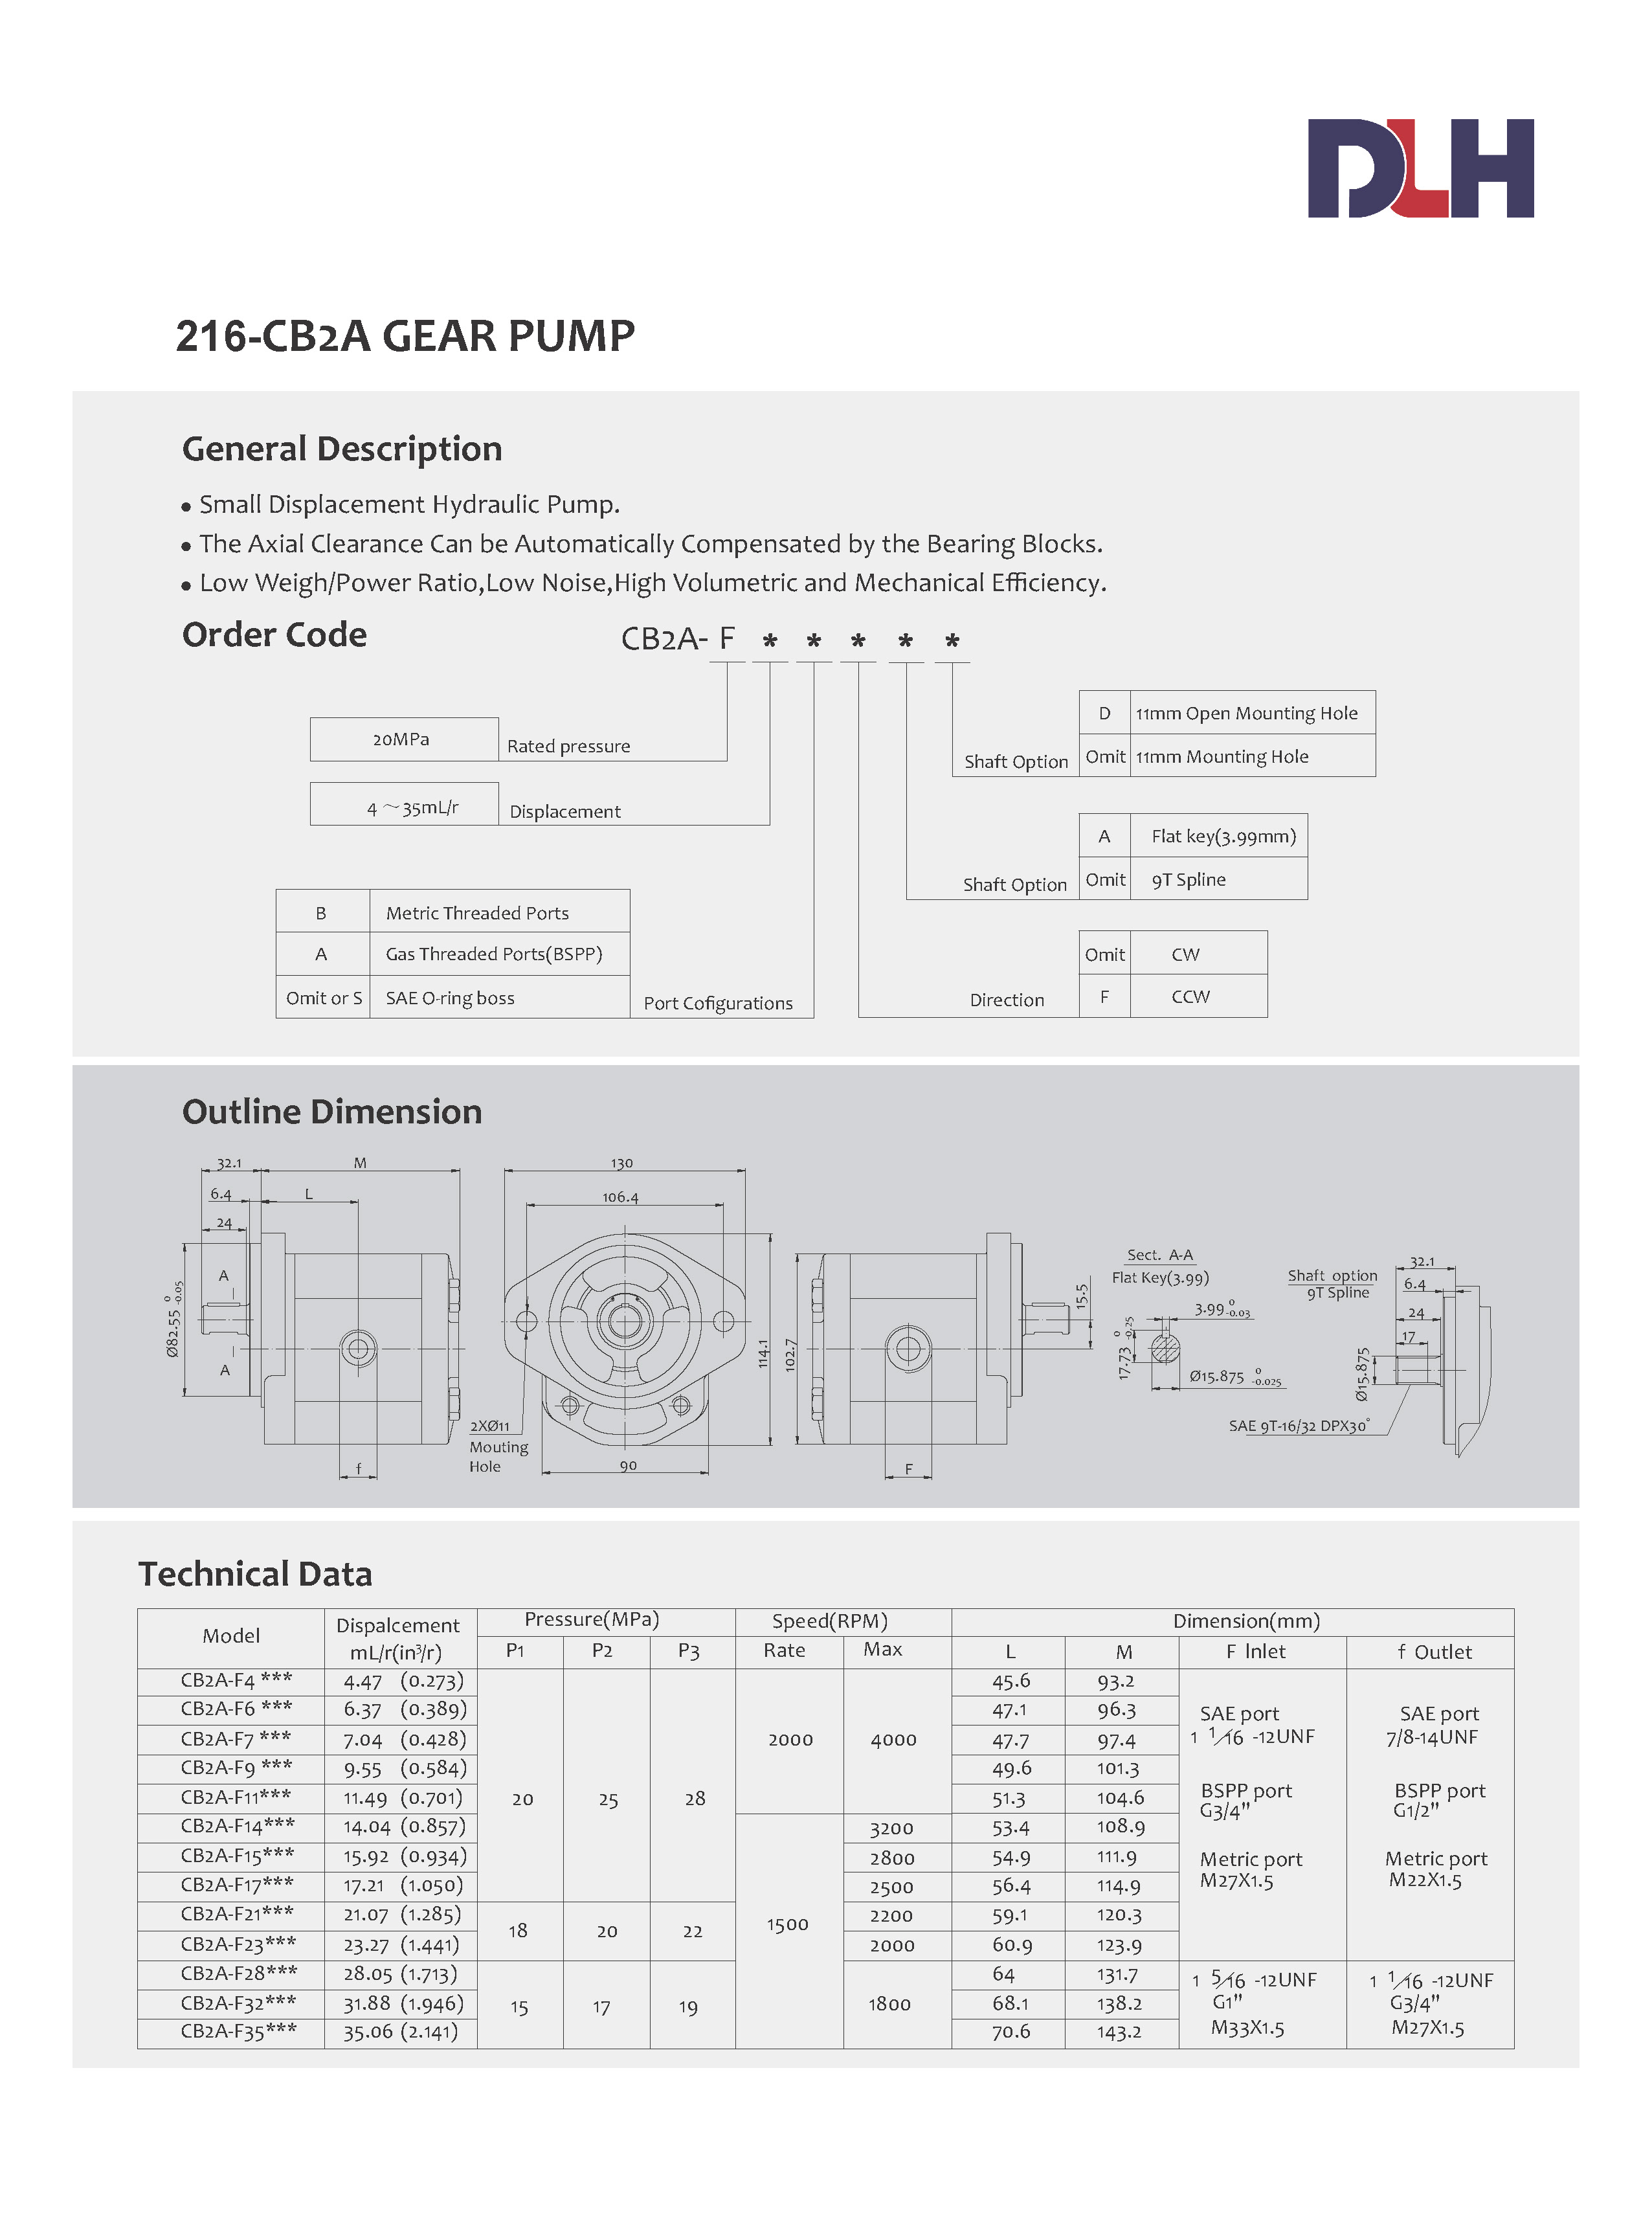 CB2A Gear Pumps